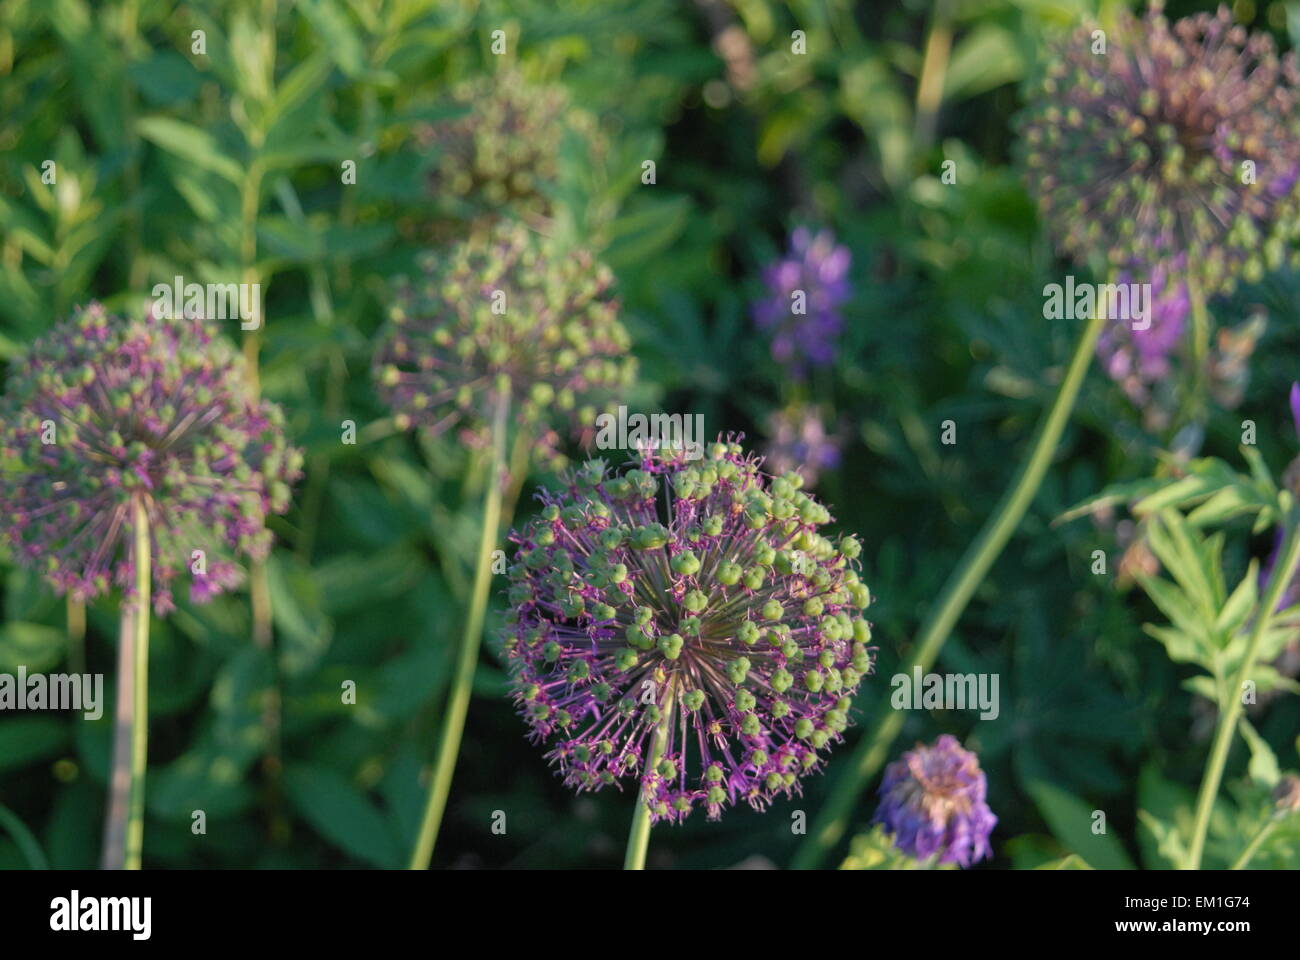 Ornamental Allium, Purple Onion plante vivace, producteur de semences de fleurs d'été. Banque D'Images